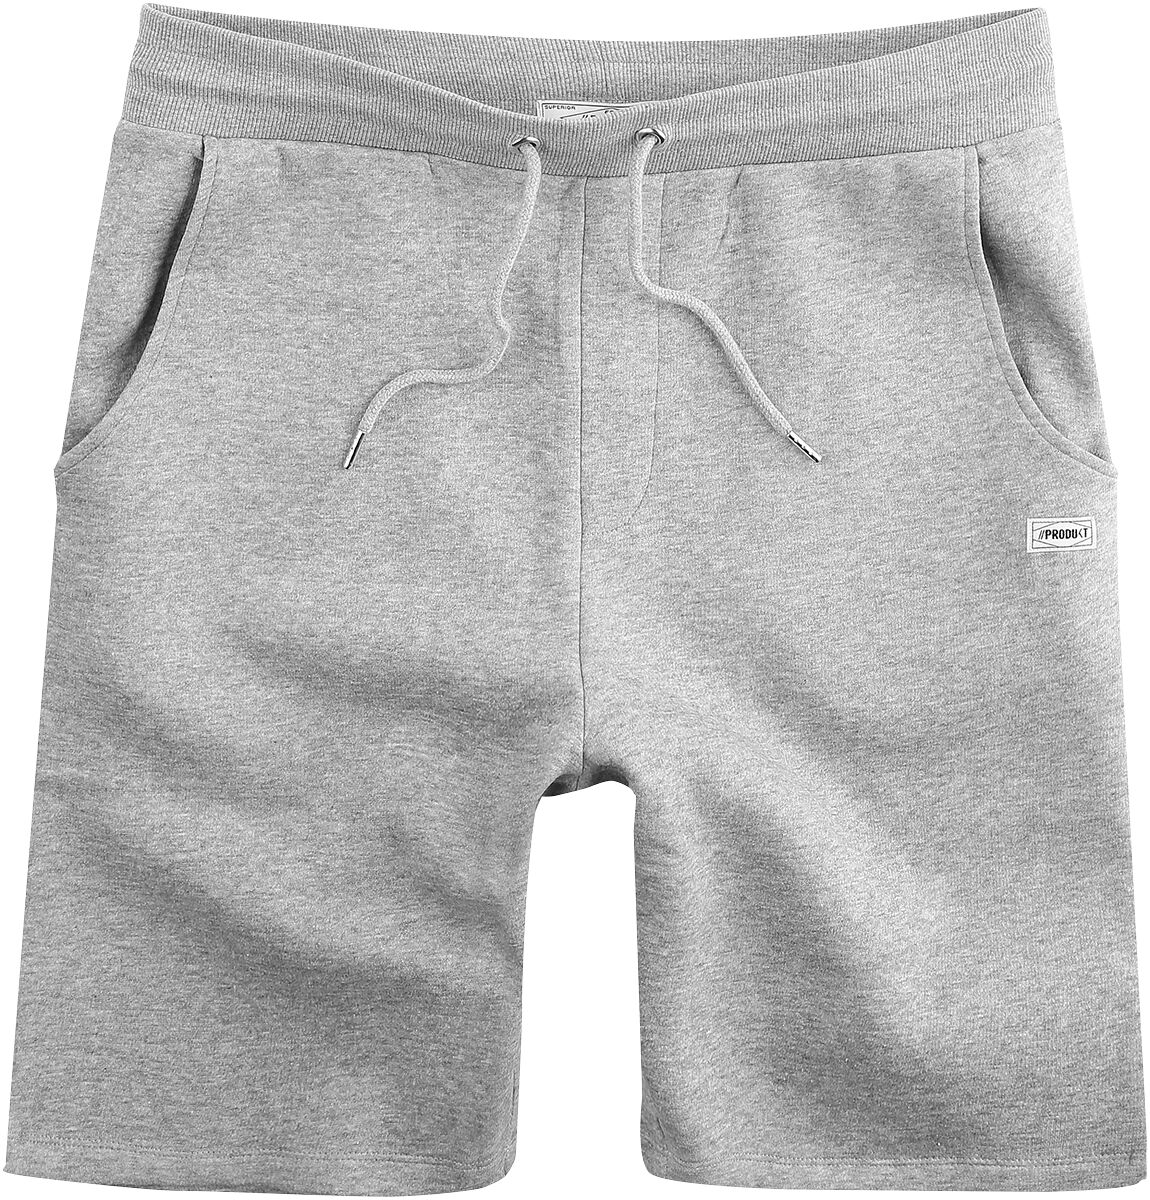 Produkt Short - Basic Sweat Shorts - S bis XXL - für Männer - Größe XXL - hellgrau meliert